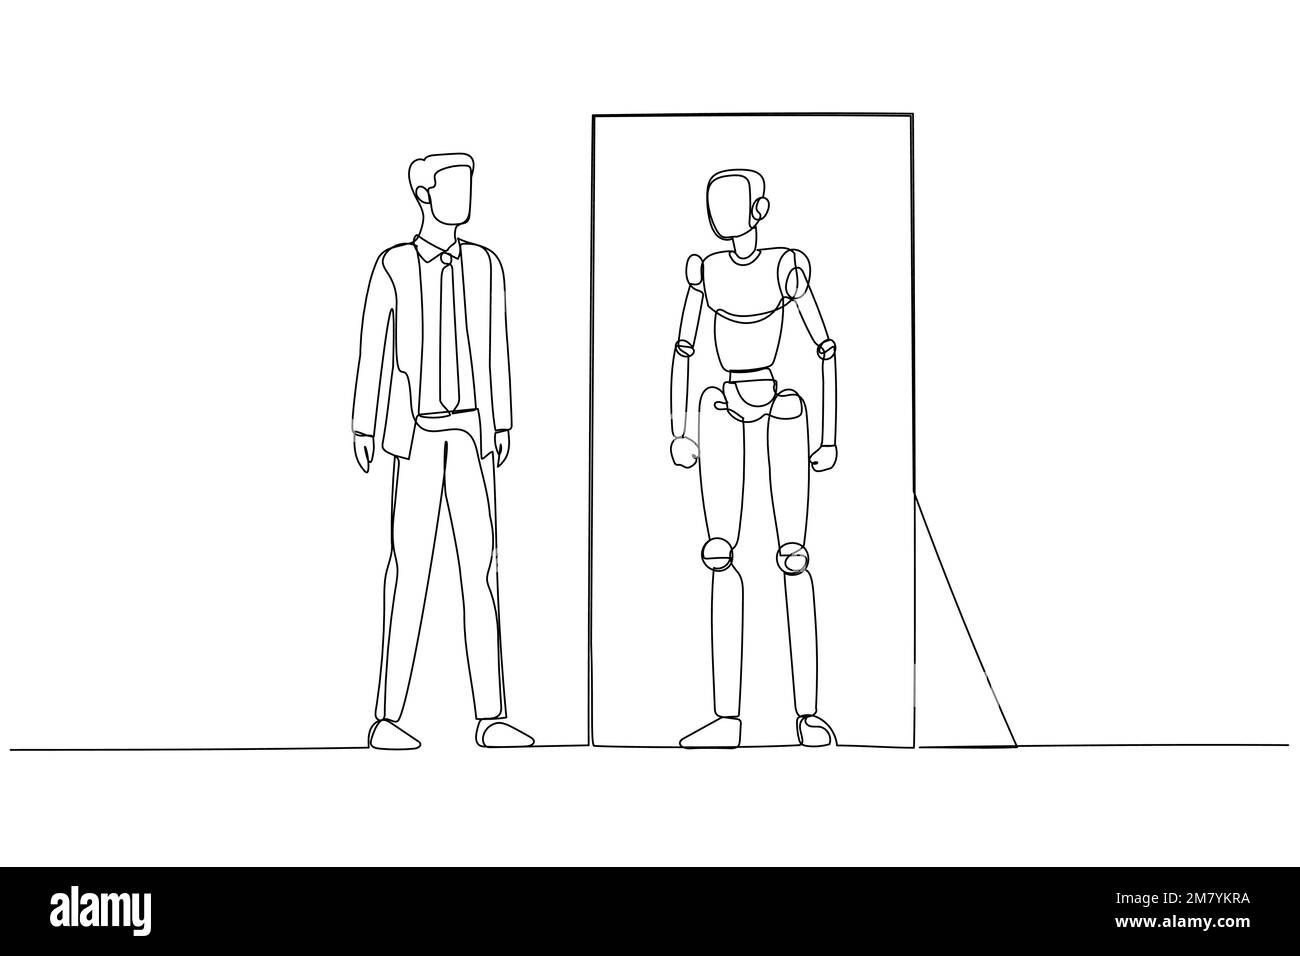 Illustrazione di un uomo d'affari che guarda nello specchio e vede la versione robot del concetto di sé dell'intelligenza artificiale. Design di stile artistico a linea singola Illustrazione Vettoriale